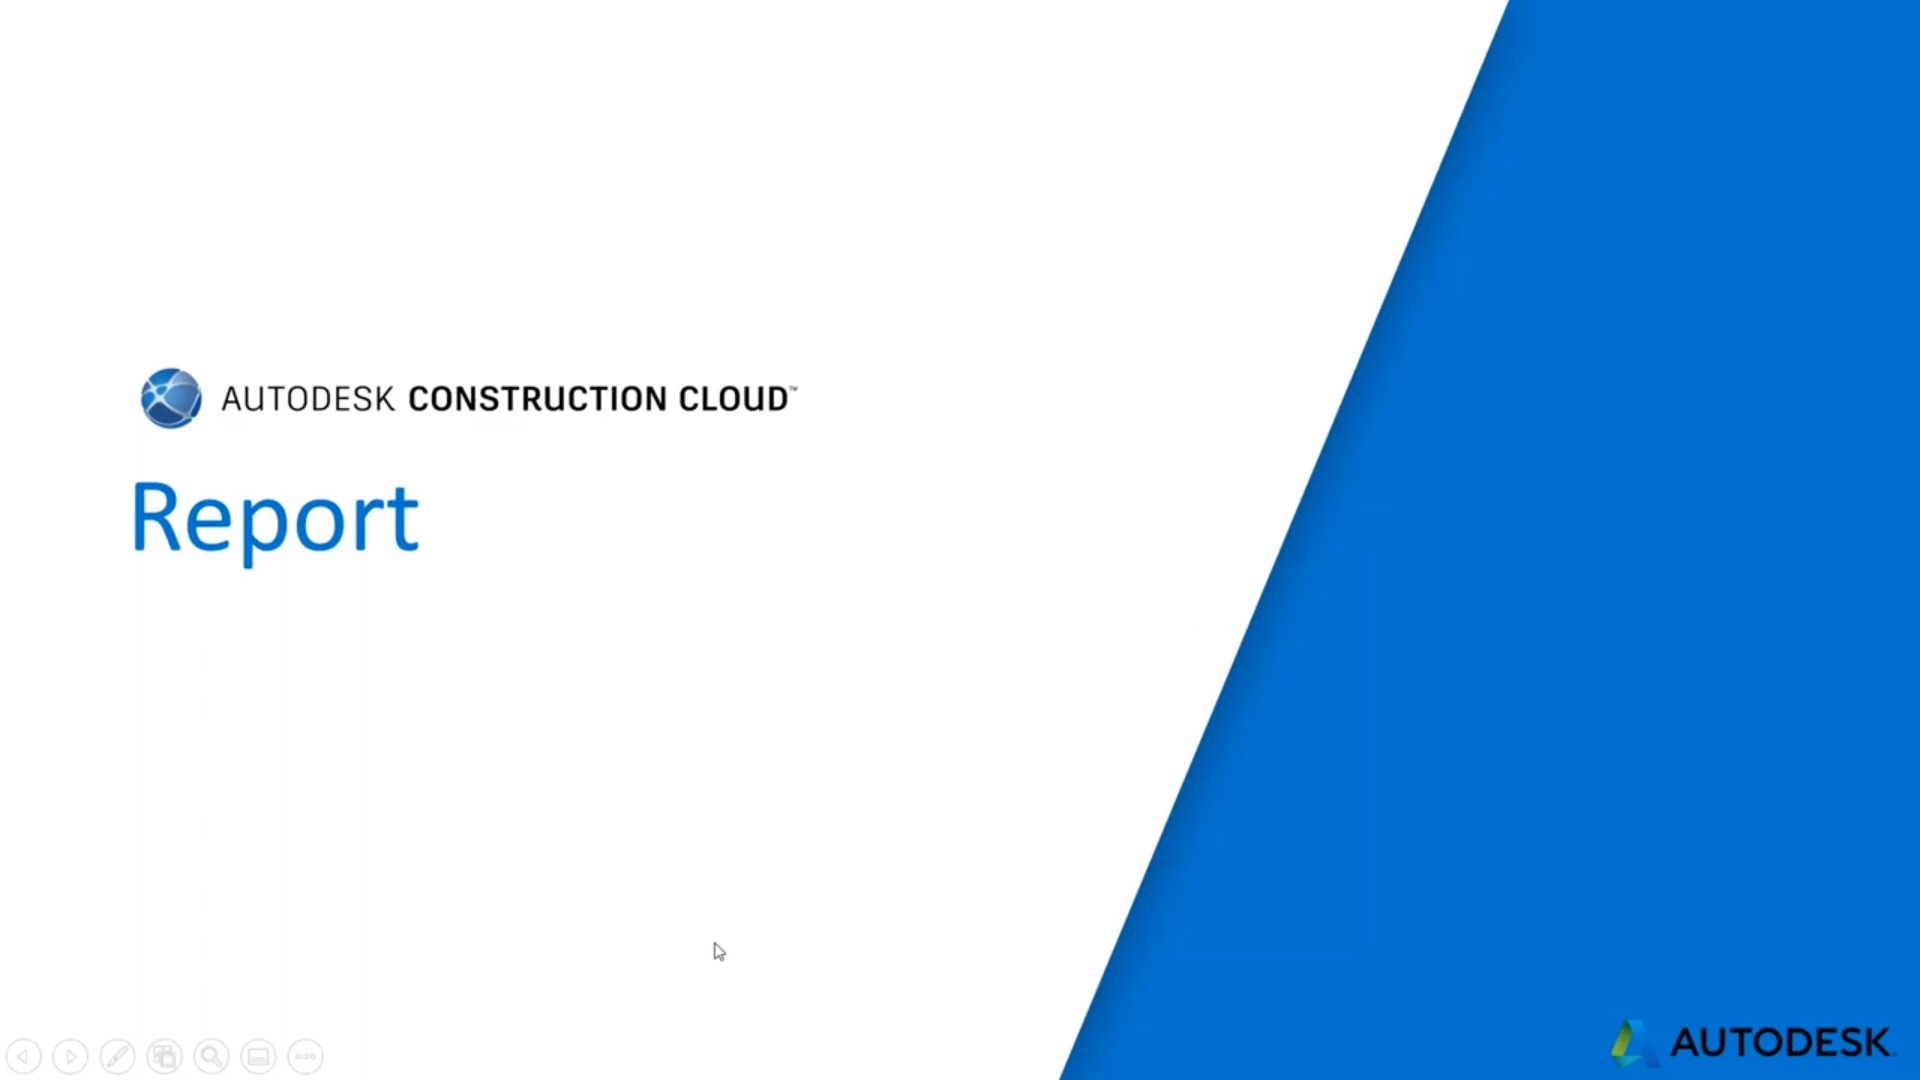 【Autodesk Construction Cloud】其他功能 (四) Report